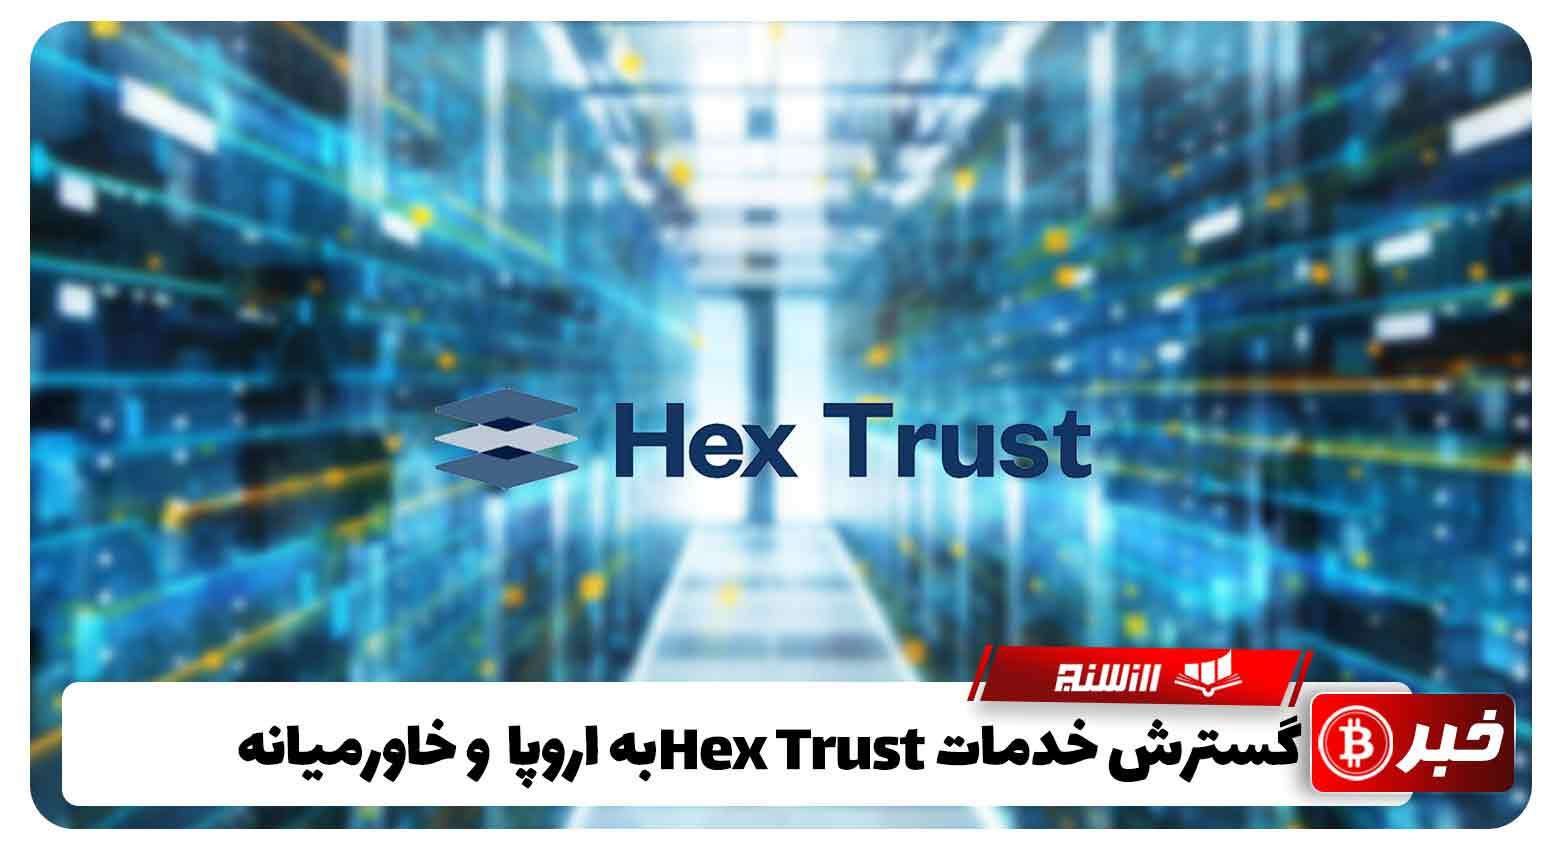 گسترش خدمات Hex Trust به اروپا و خاورمیانه با سرمایه 88 میلیون دلاری 